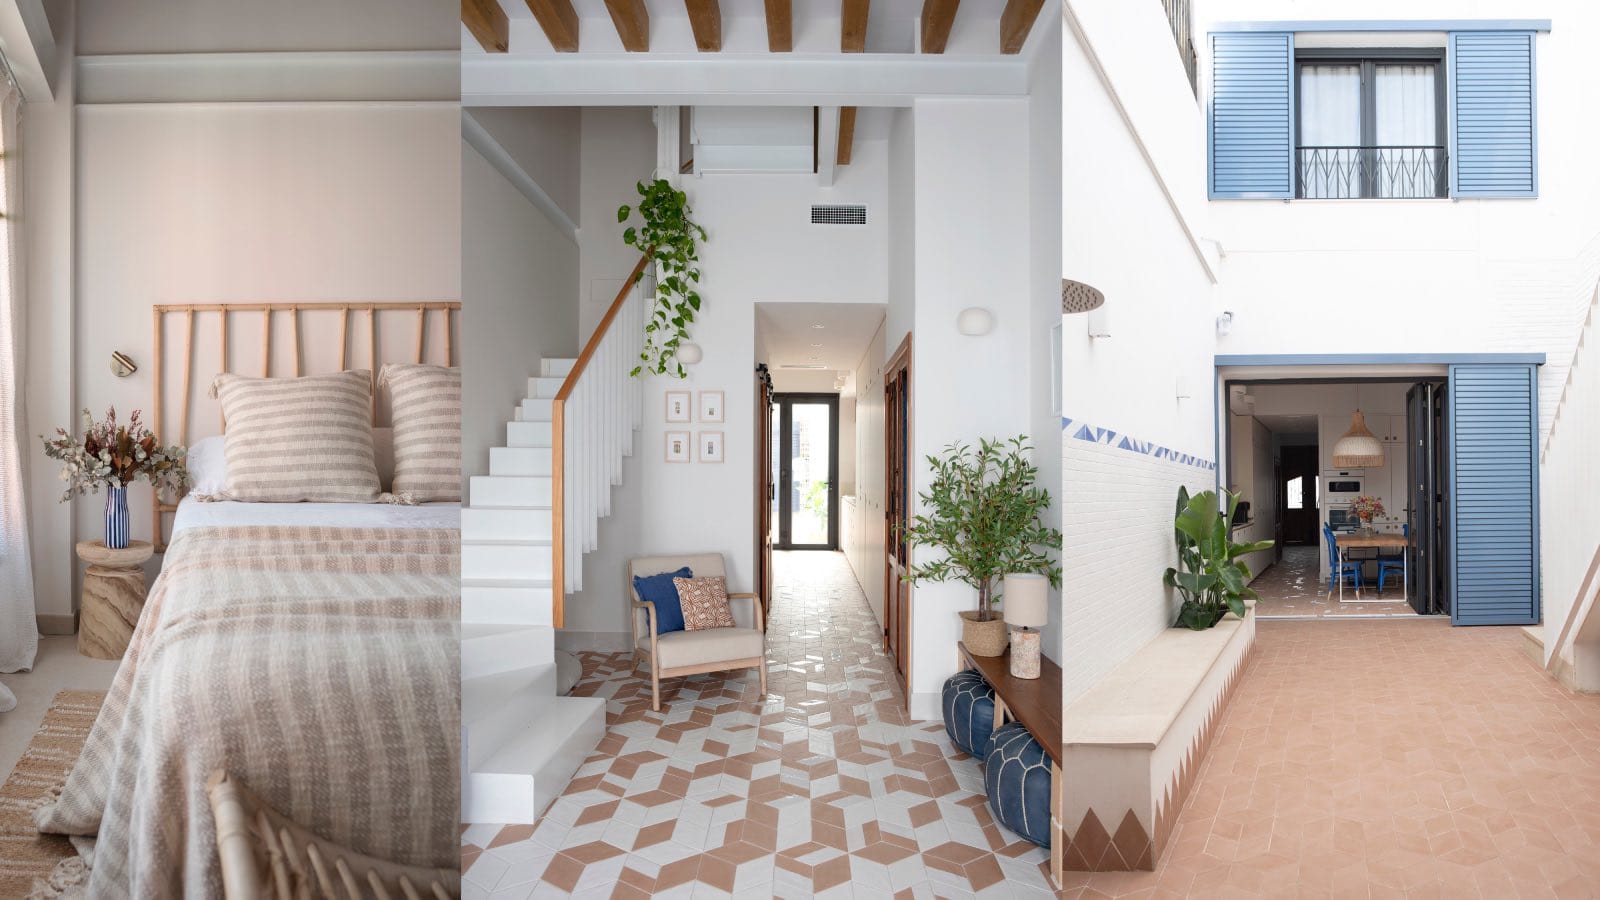 casa moderna mediterránea en valencia: dormitorio, escaleras y patio